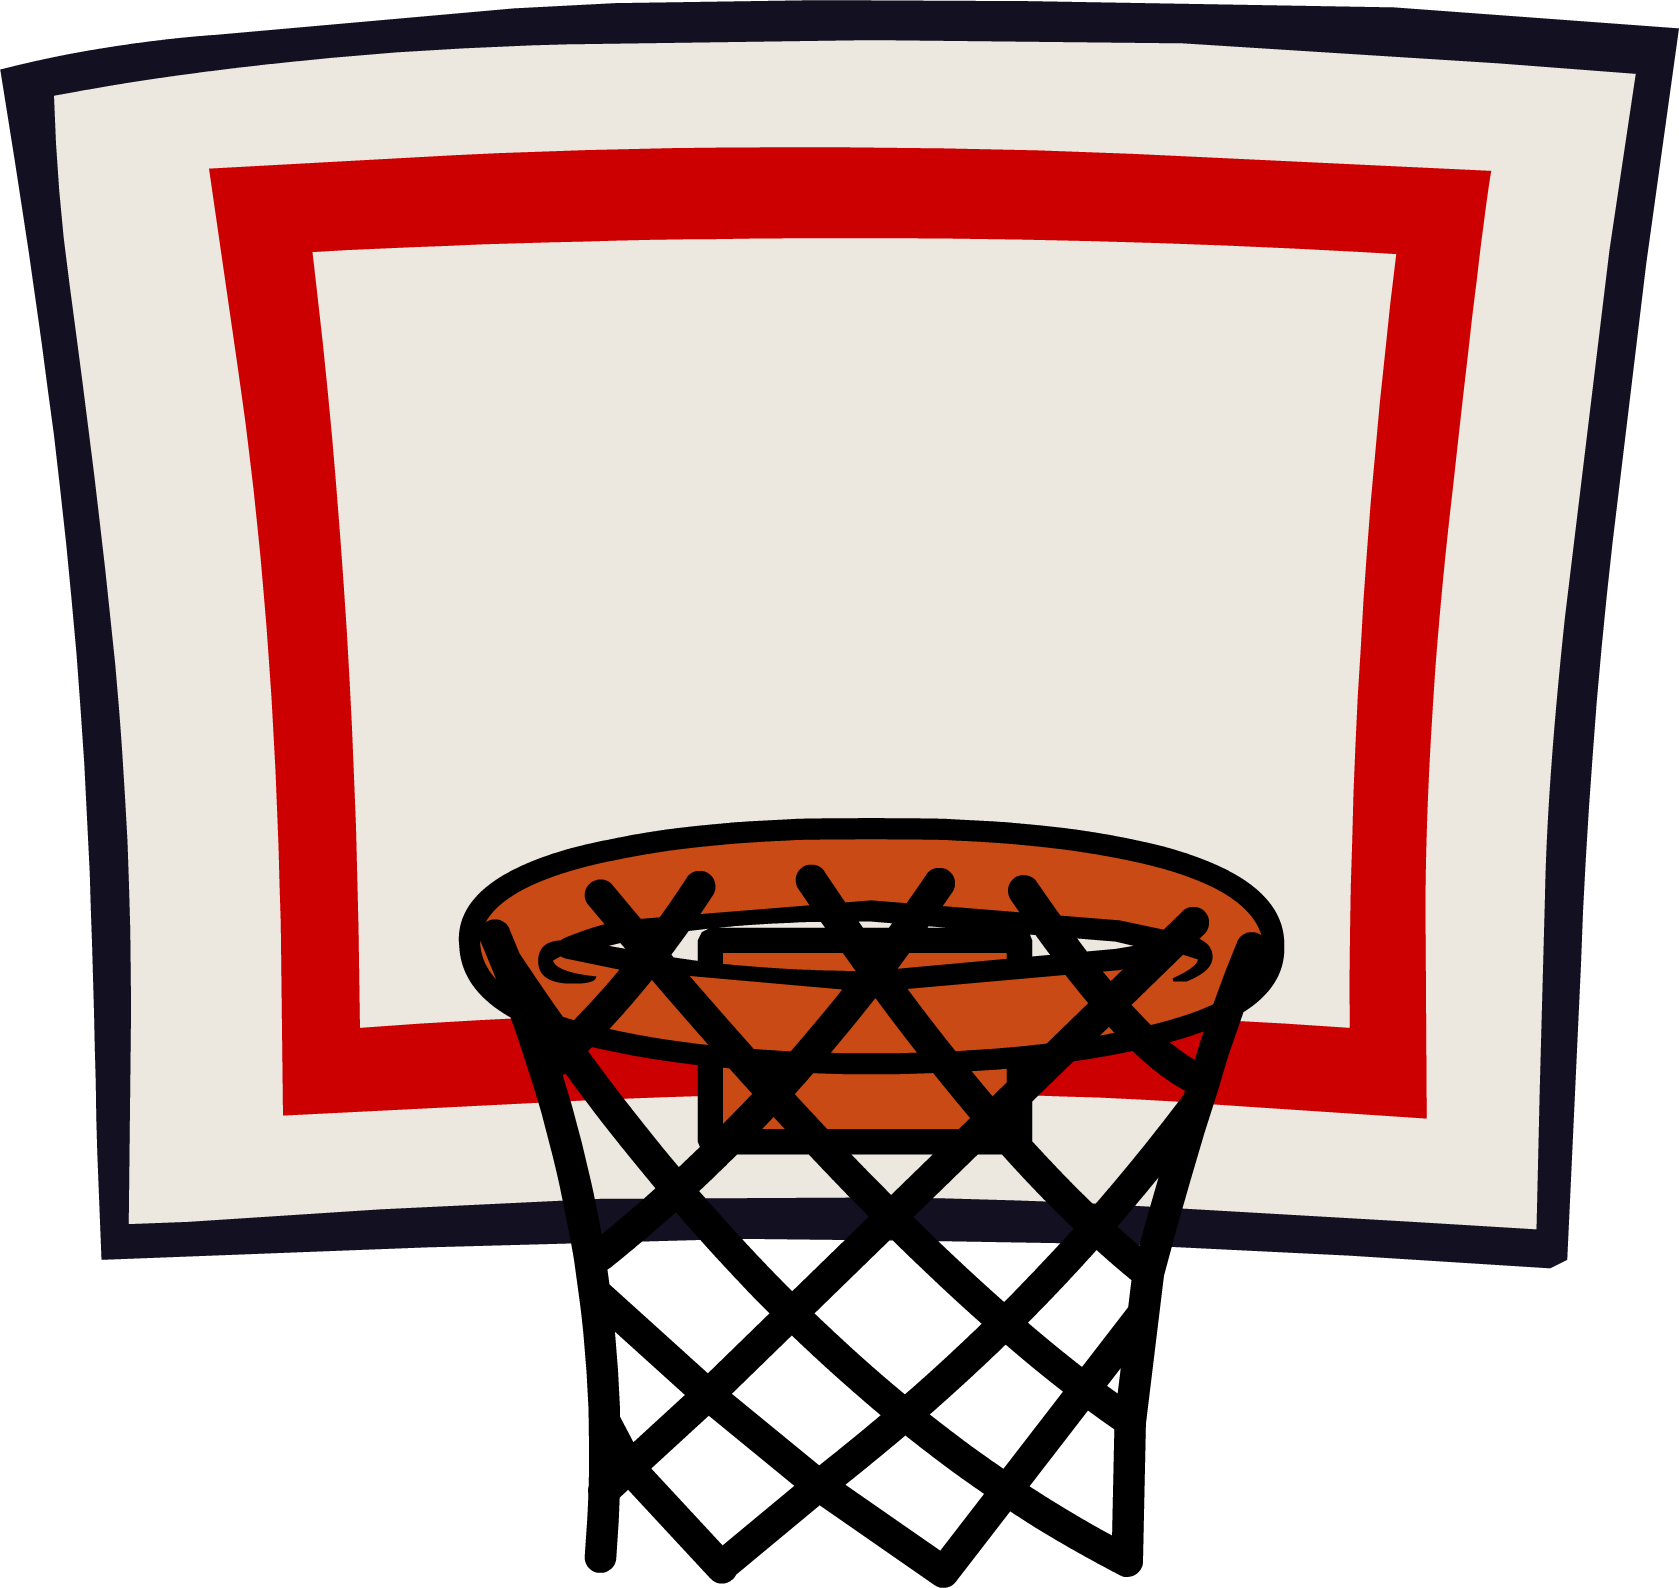 Hoop basketball ring net clipart 2 - Clipartix